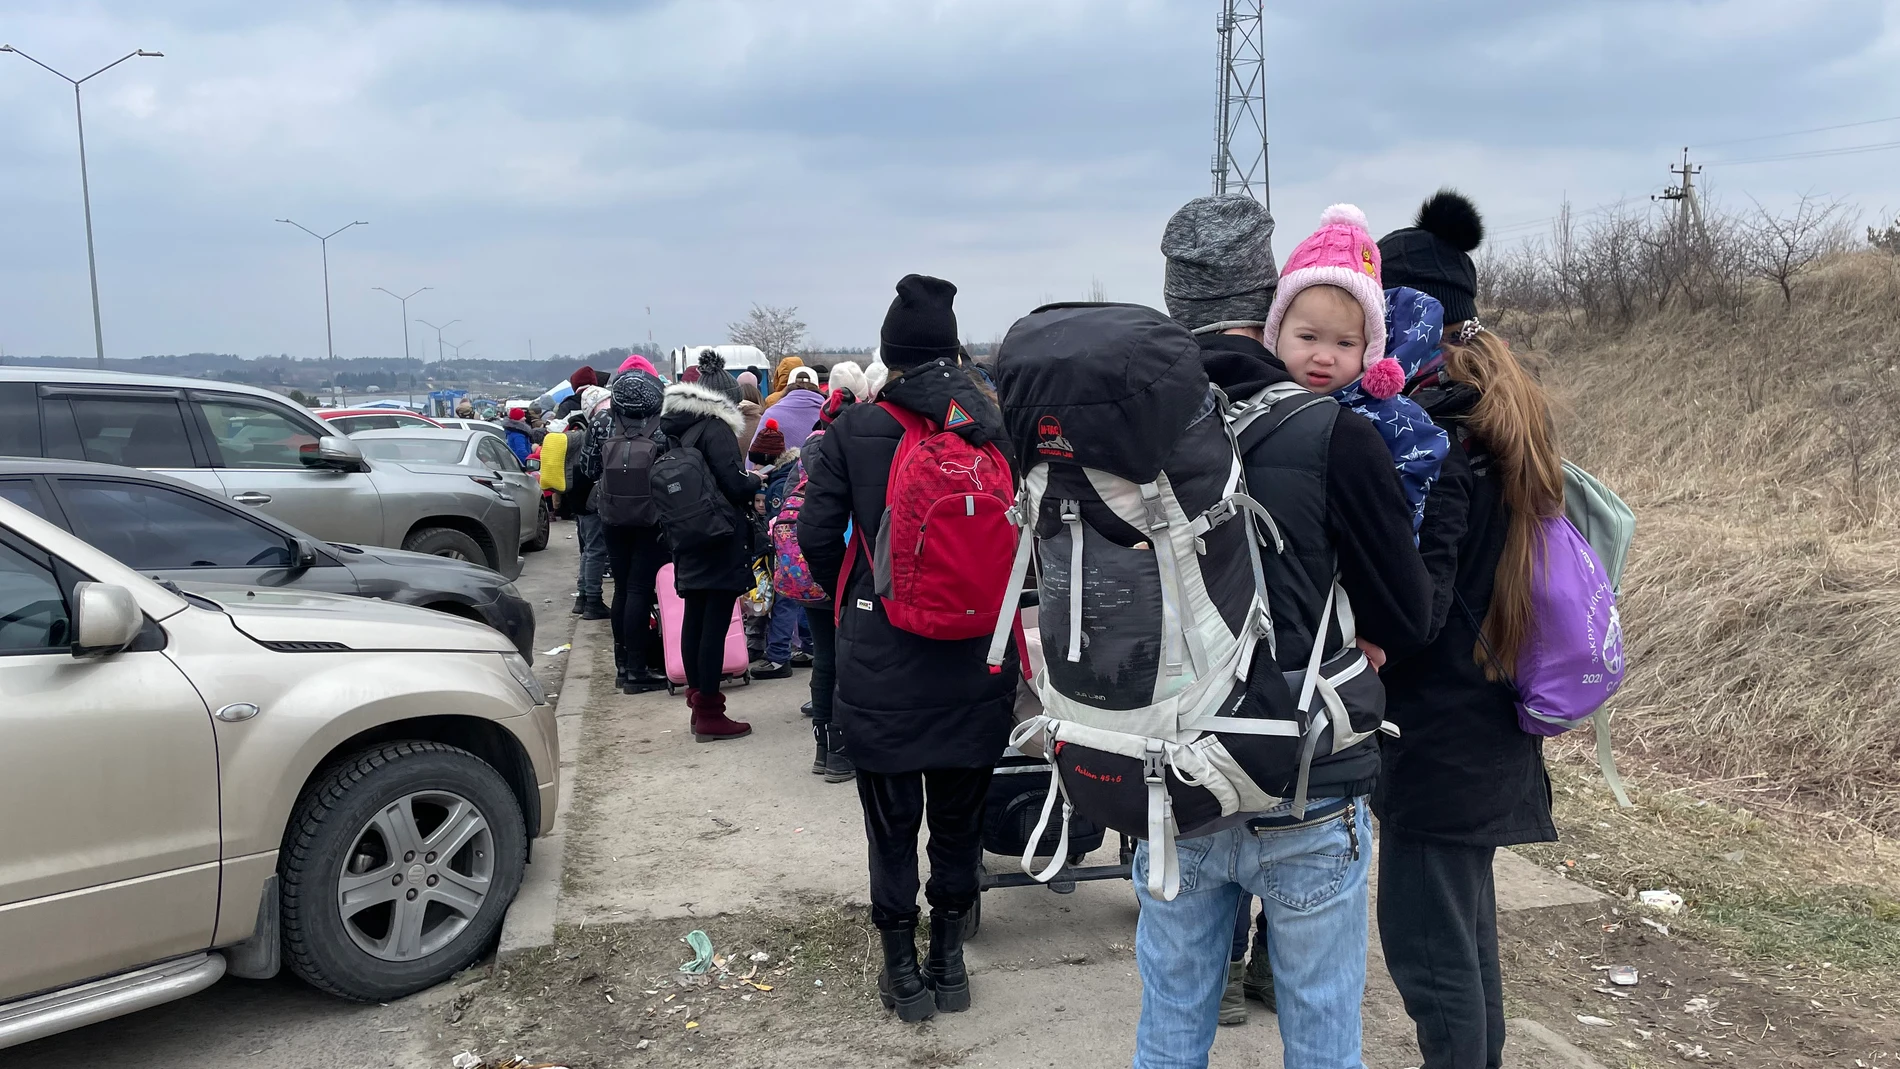 Refugiados ucranianos abandonan el país desde la ciudad de Leópolis con dirección a Polonia.